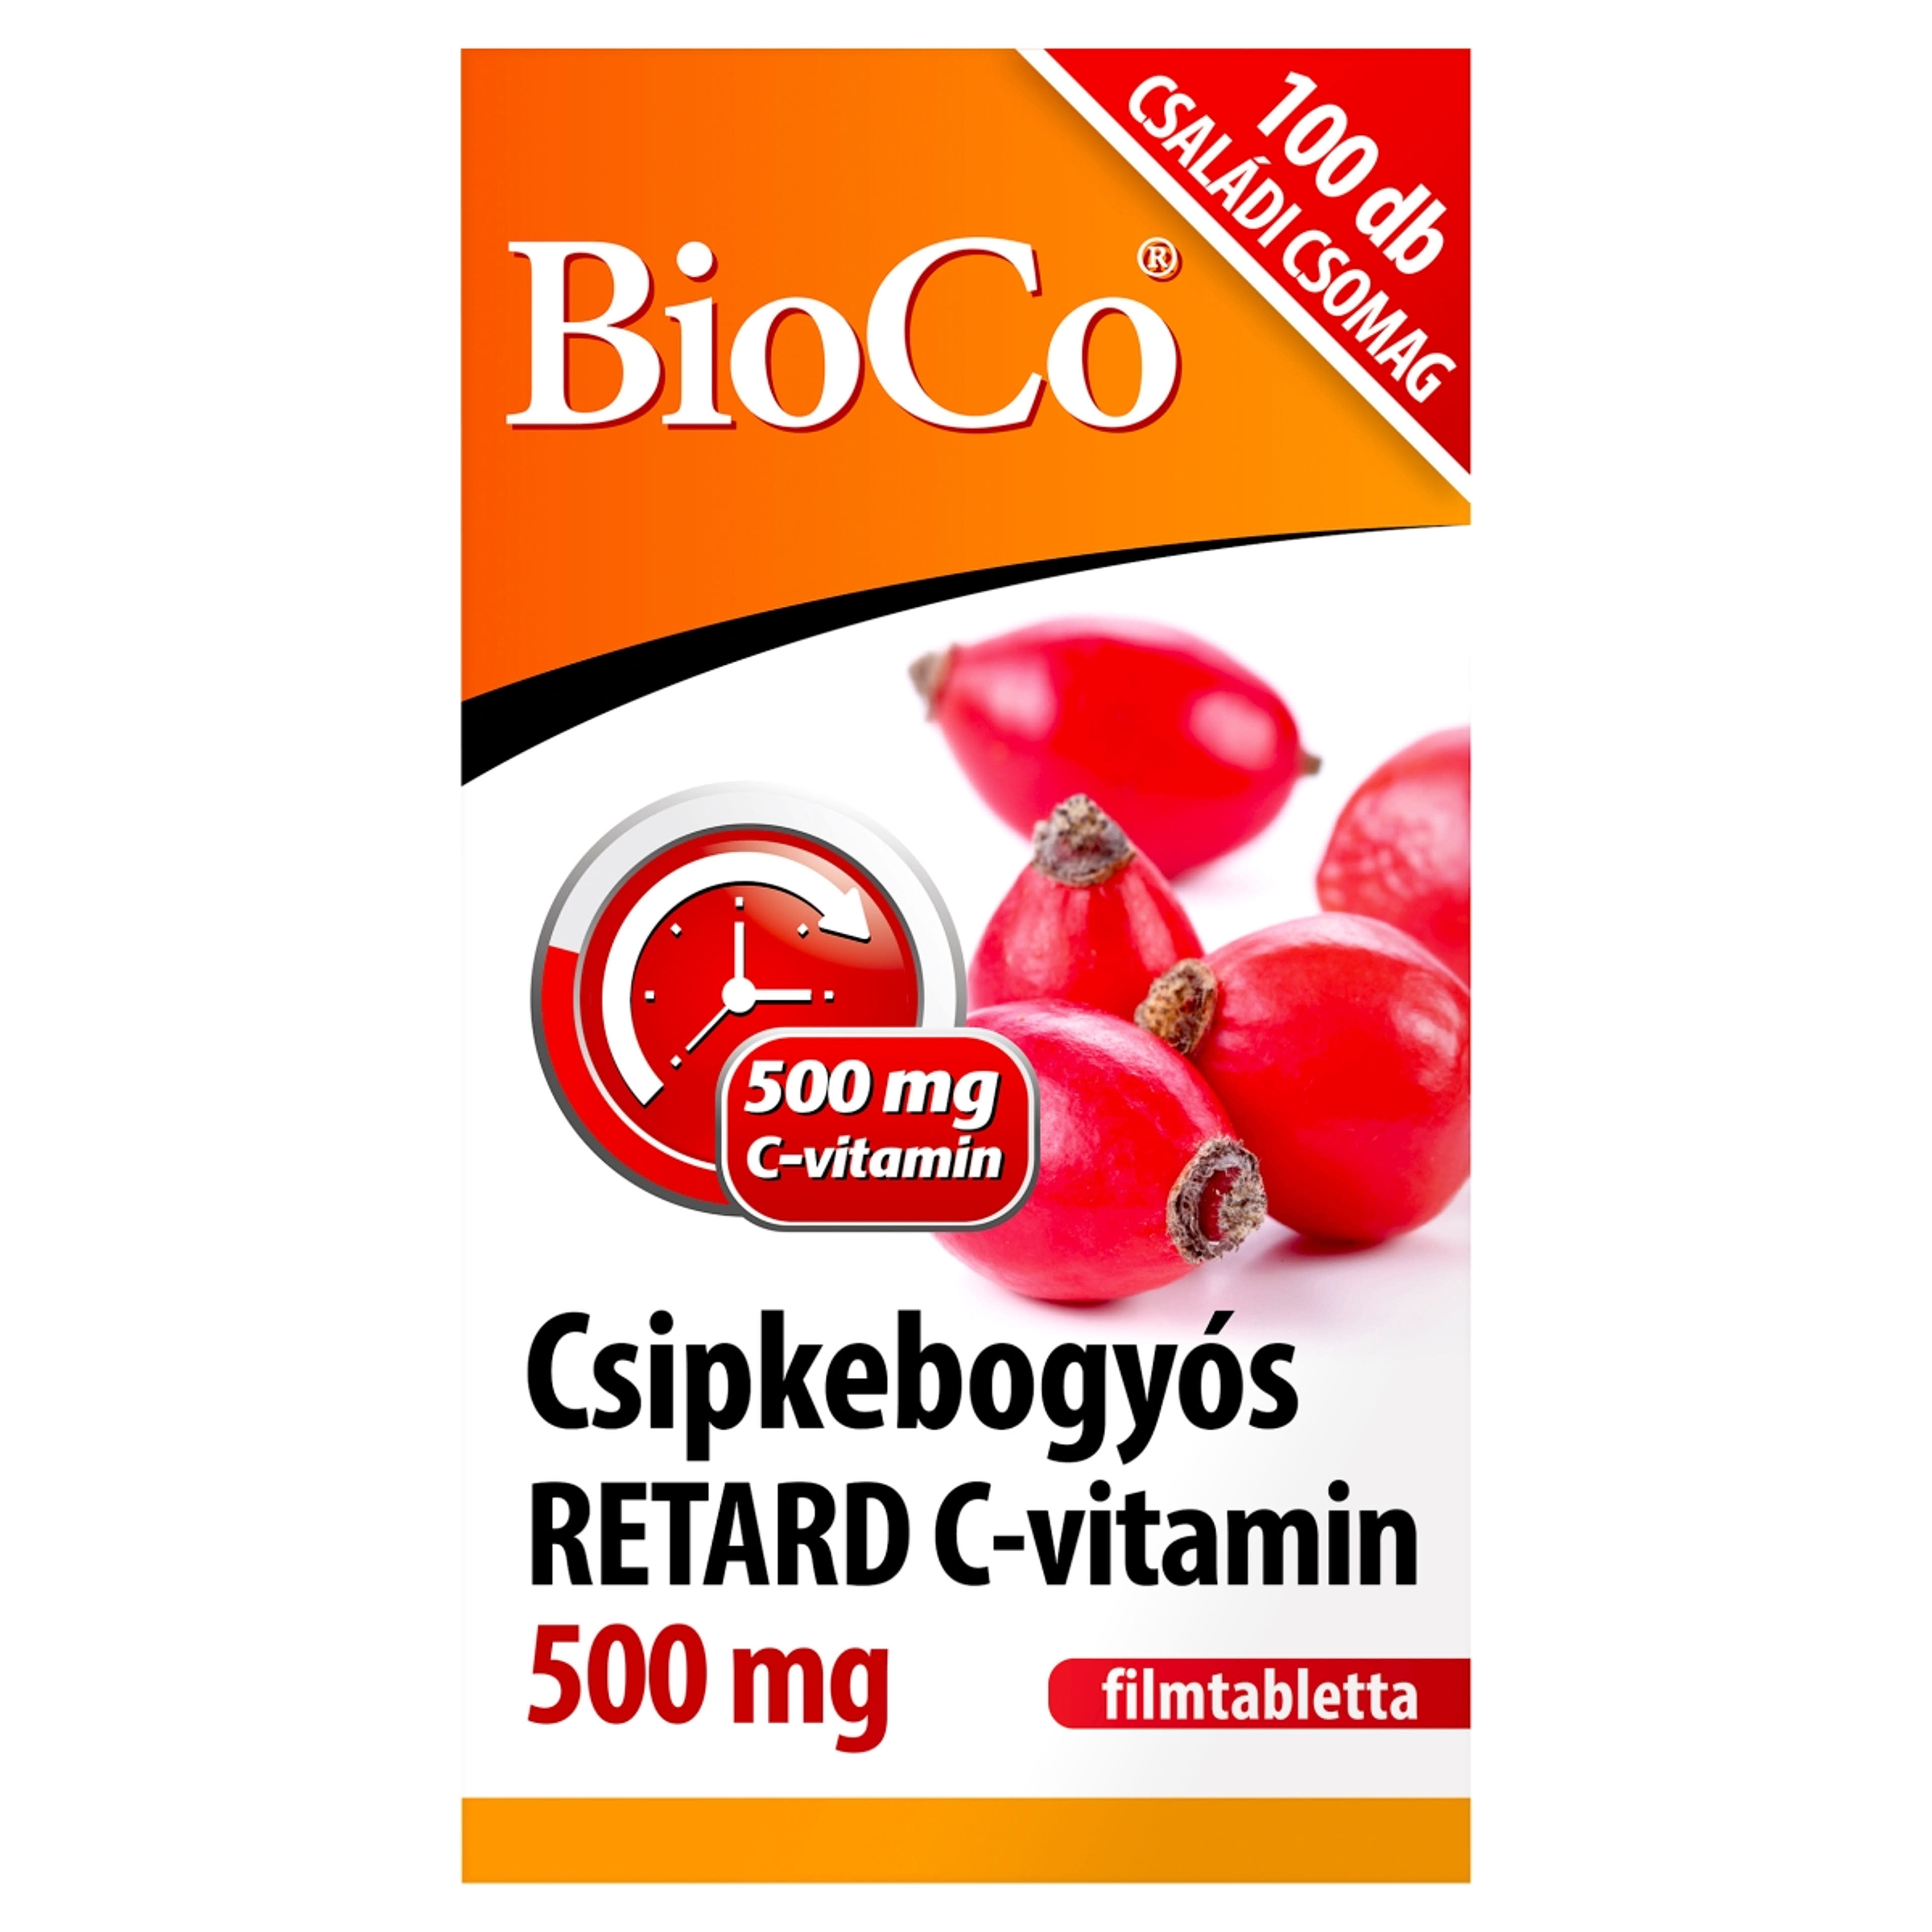 Bioco retard C-vitamin étrendkiegészítő tabletta csipkebogyó - 100 db